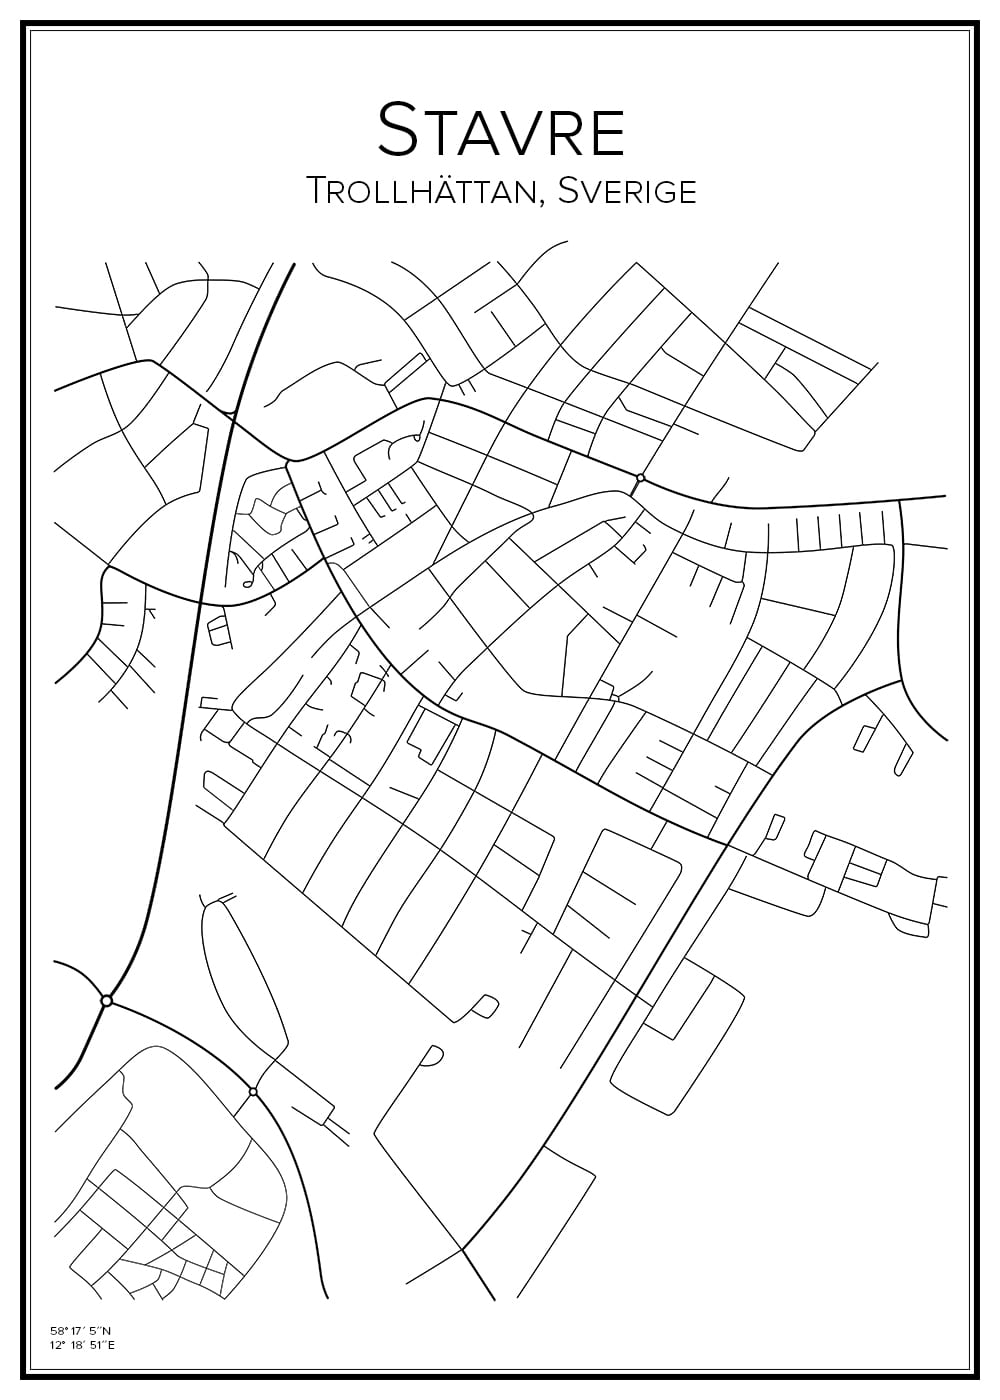 Stadskarta över Stavre i Trollhättan | Handritade stadskartor och posters